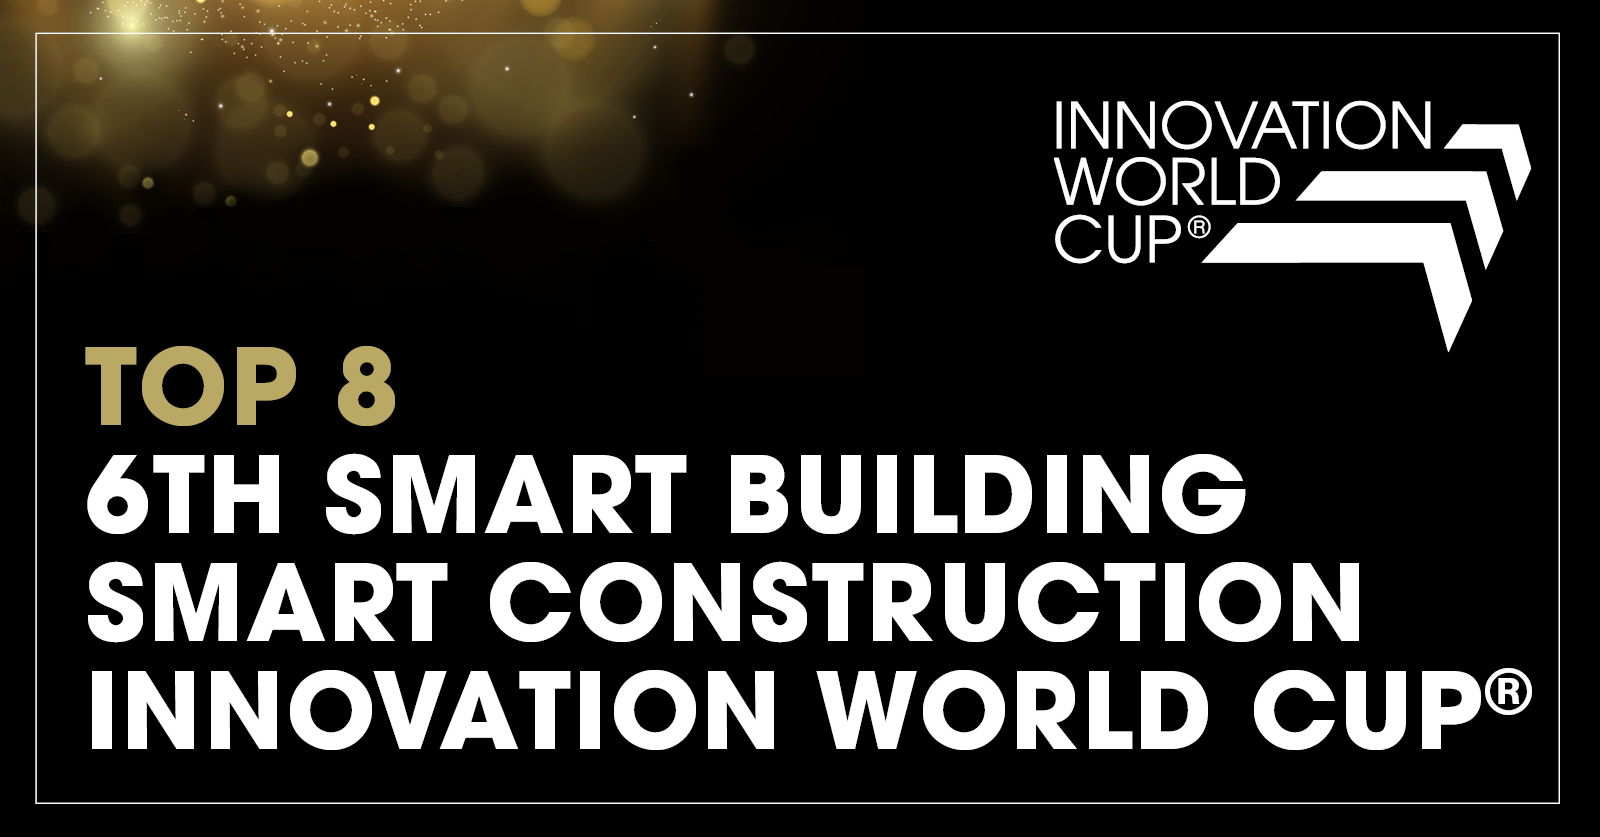 Avrupalı ​​HVAC uzmanı Hysopt, Münih'te düzenlenen 2023 İnovasyon Dünya Kupası©'nda dünyanın önde gelen Akıllı Bina ve Akıllı İnşaat Yenilikçilerinden biri olarak kabul edildi.